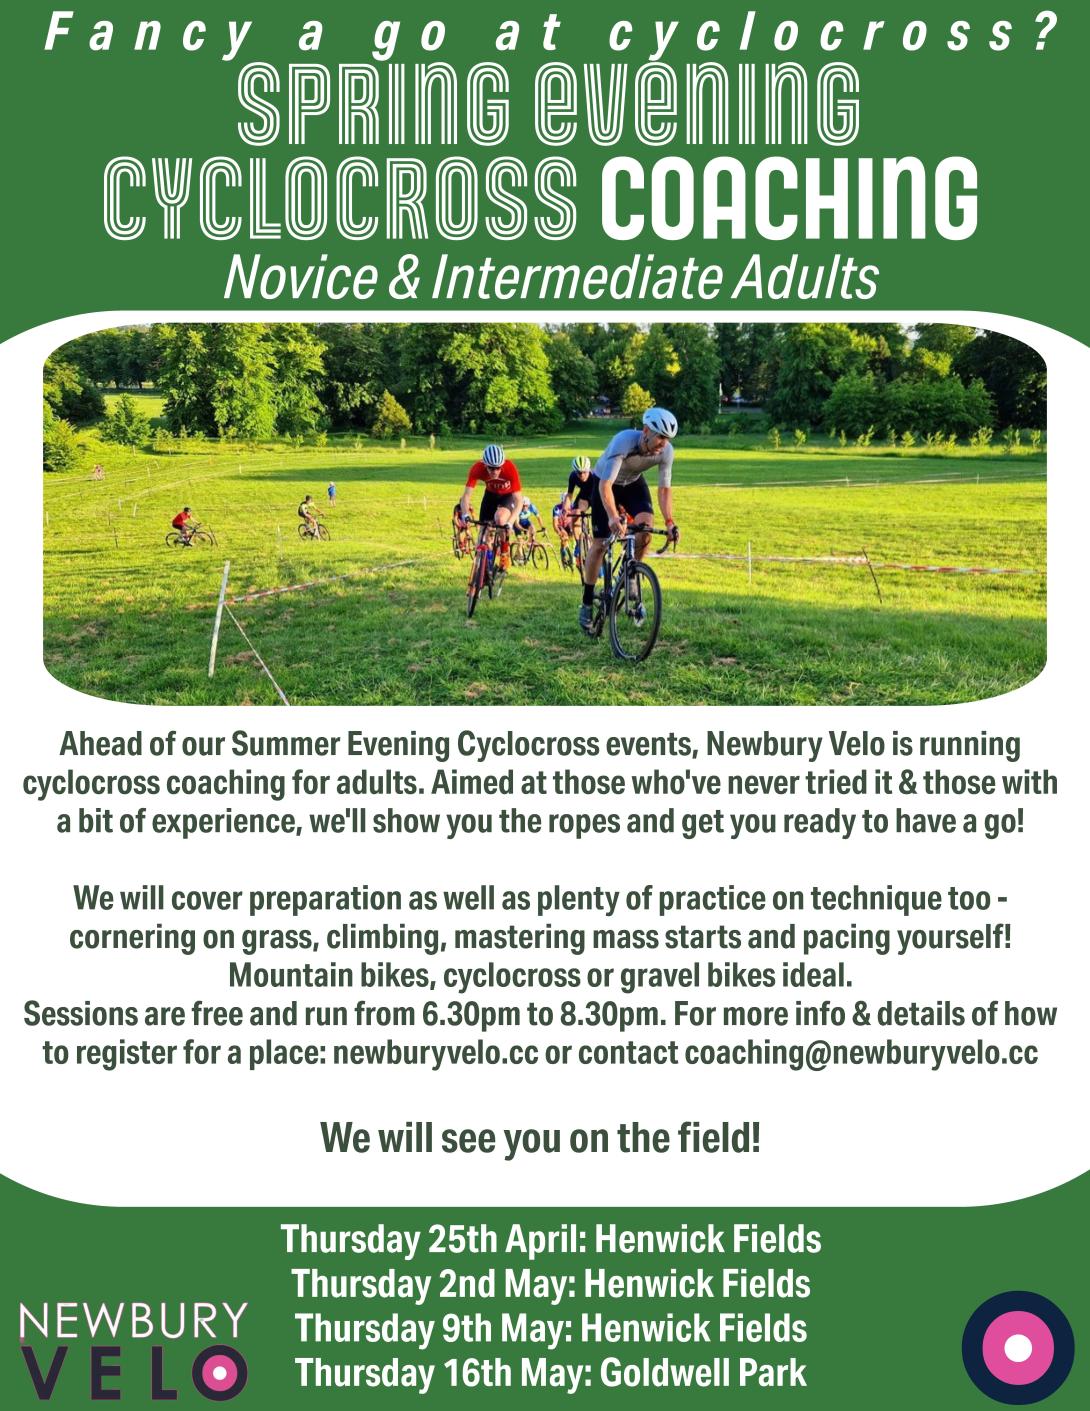 Newbury Velo CX coaching poster